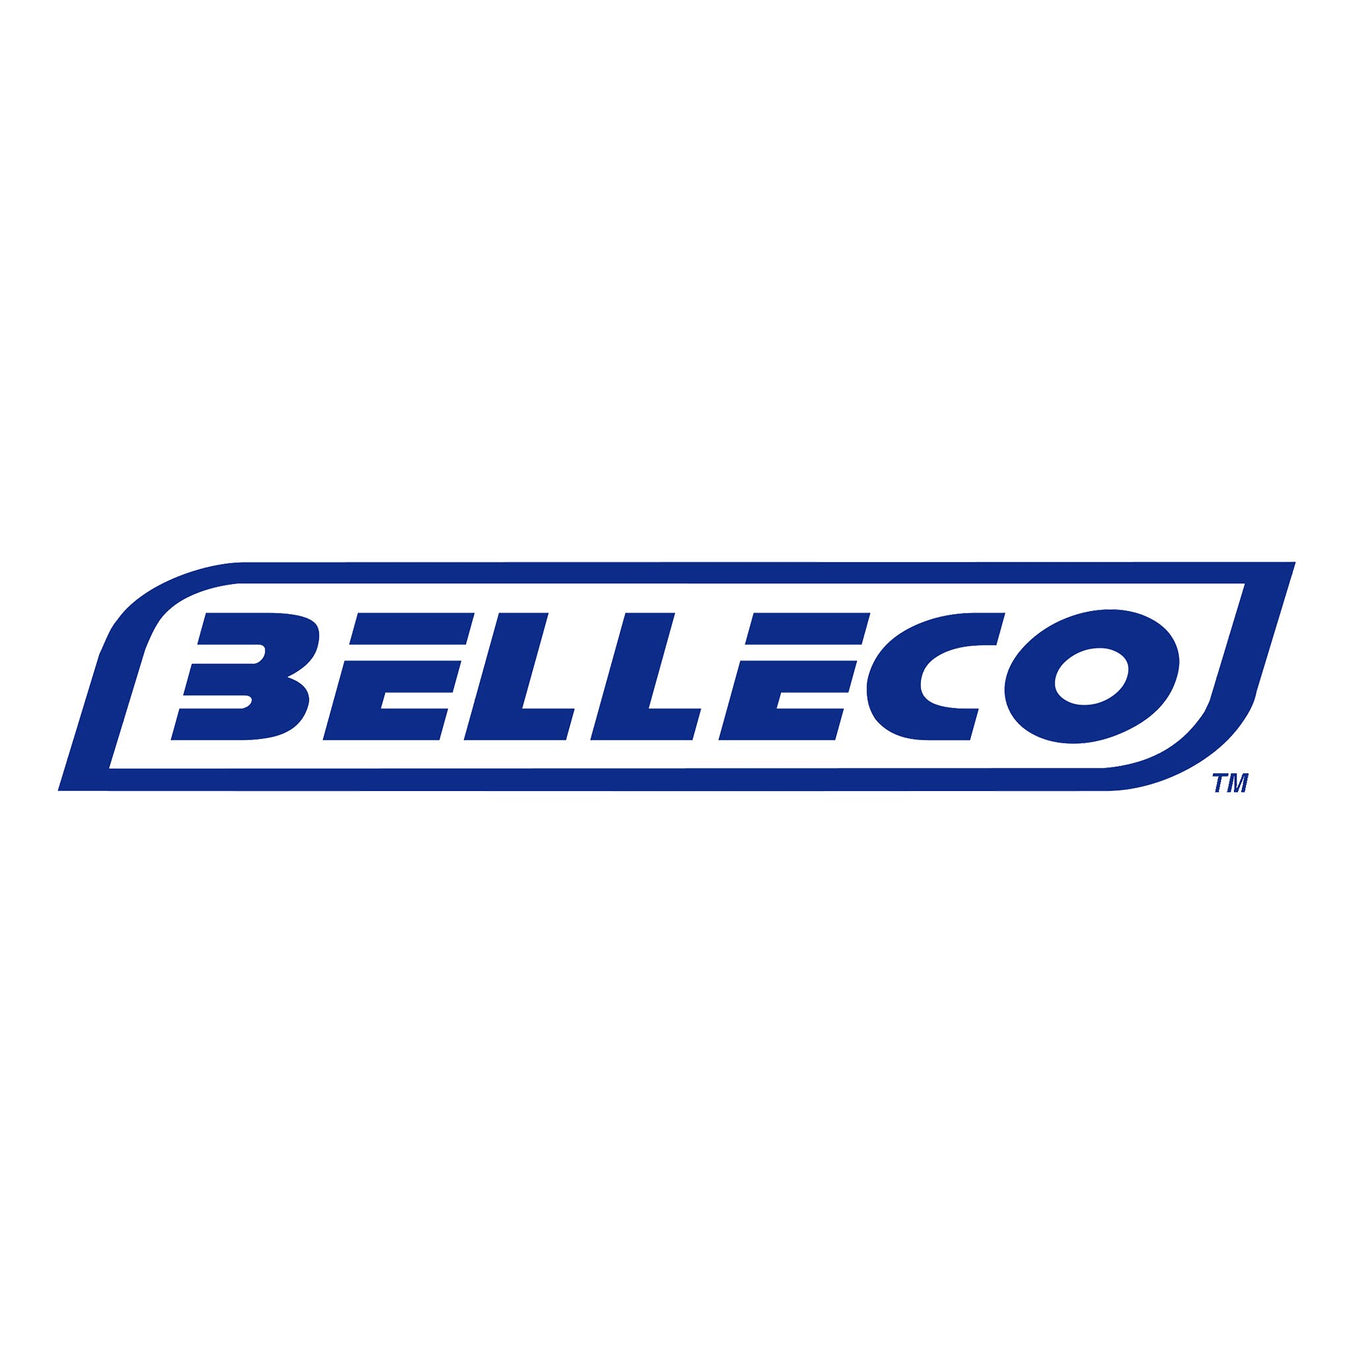 Belleco - Gecko Catering Equipment